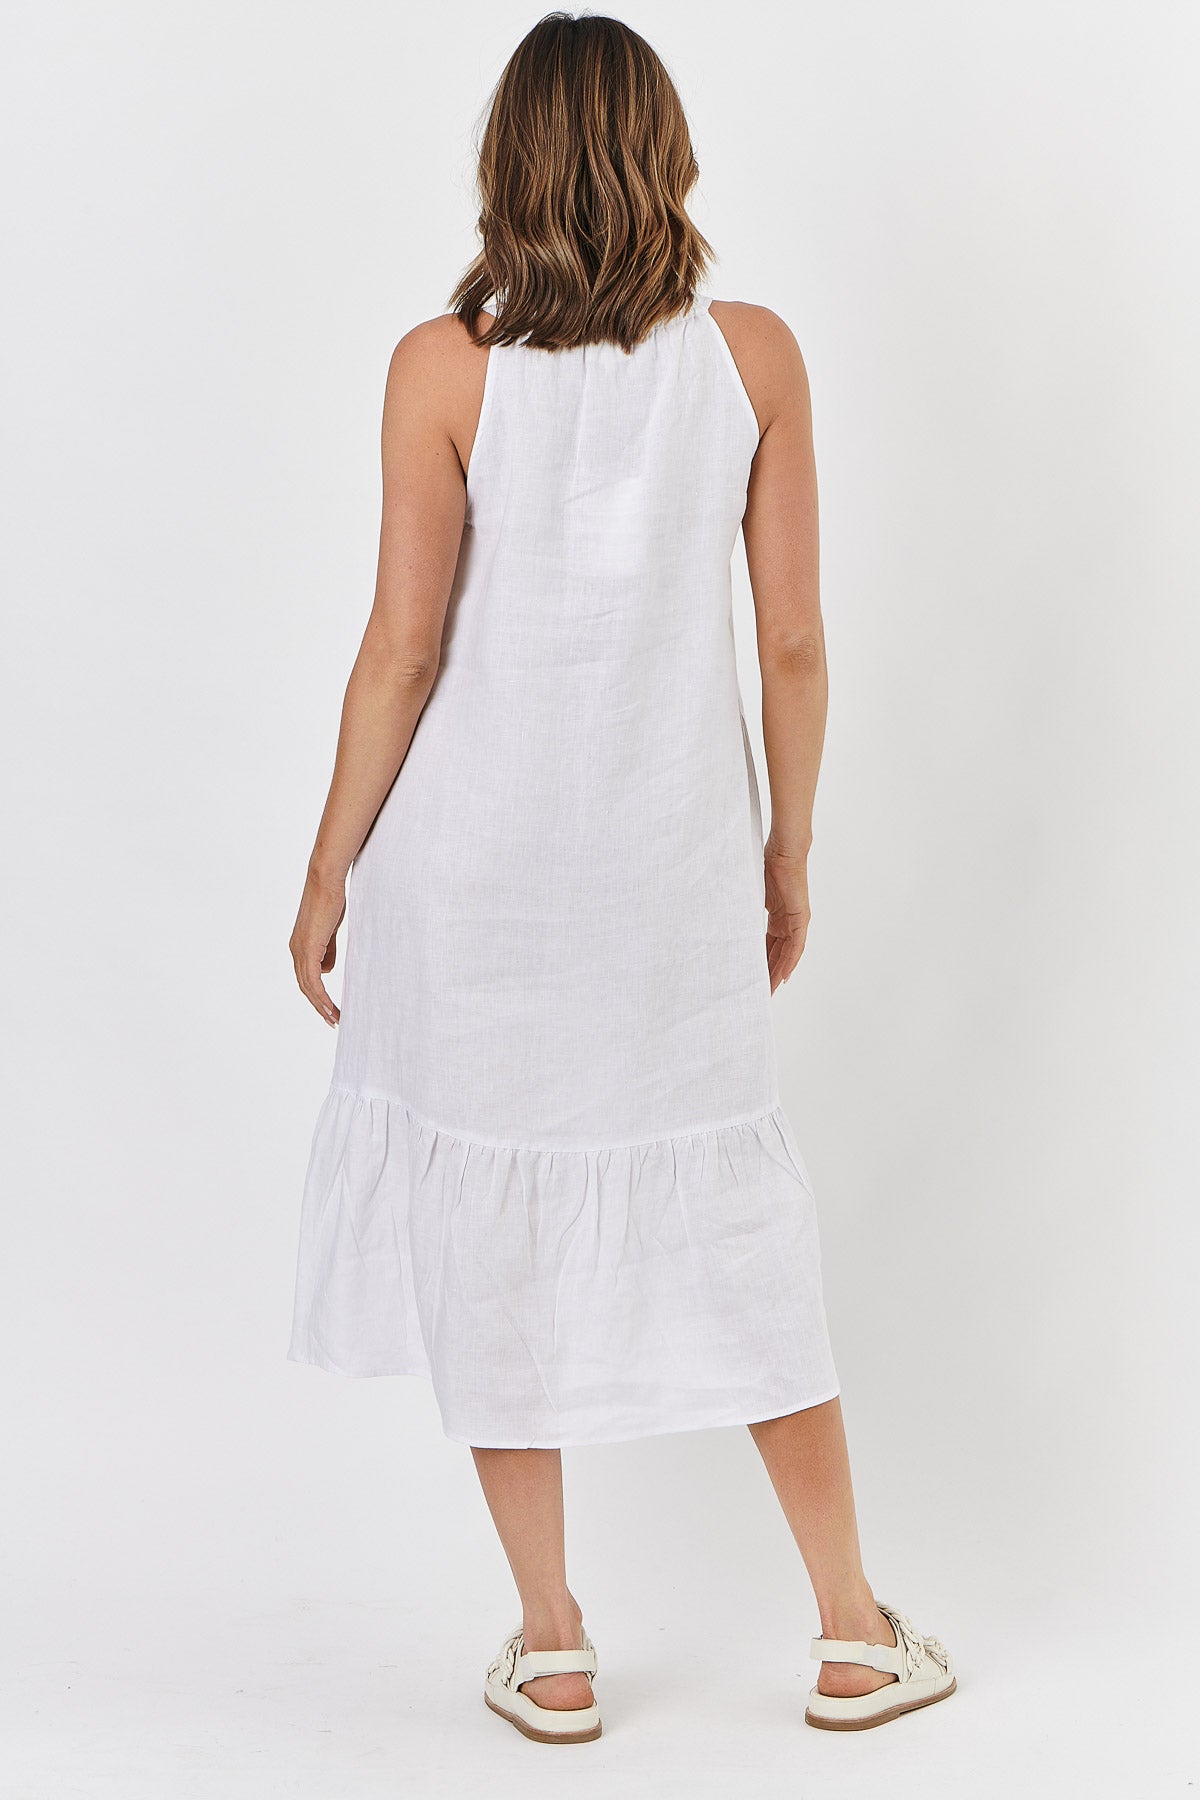 Naturals - Linen Dress White | GA440